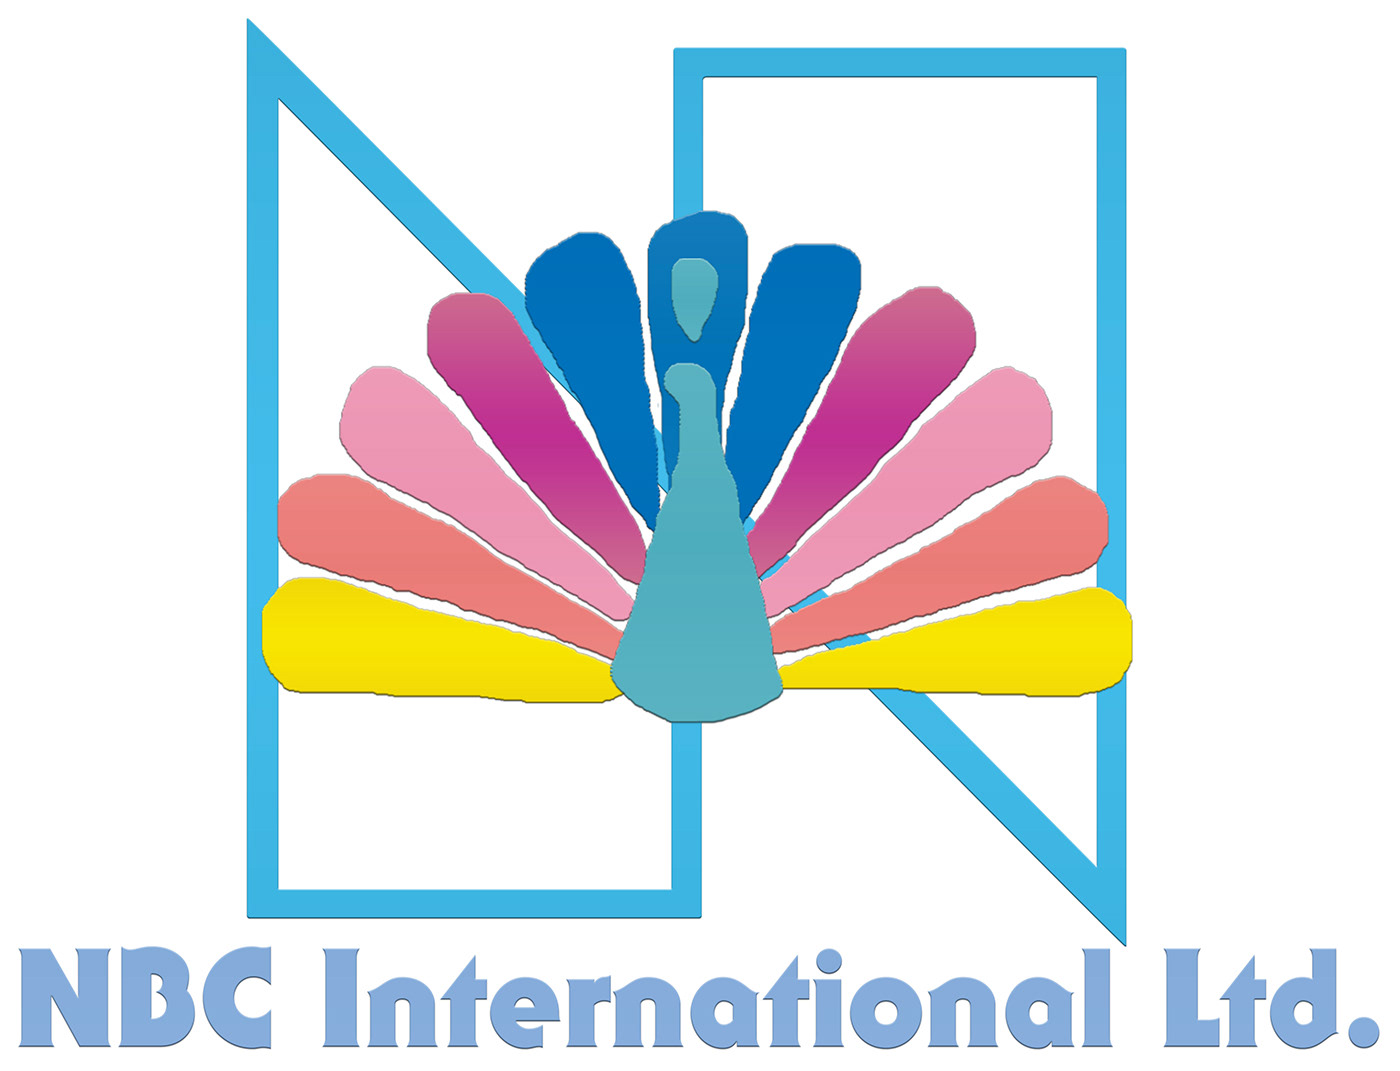 NBC International Ltd